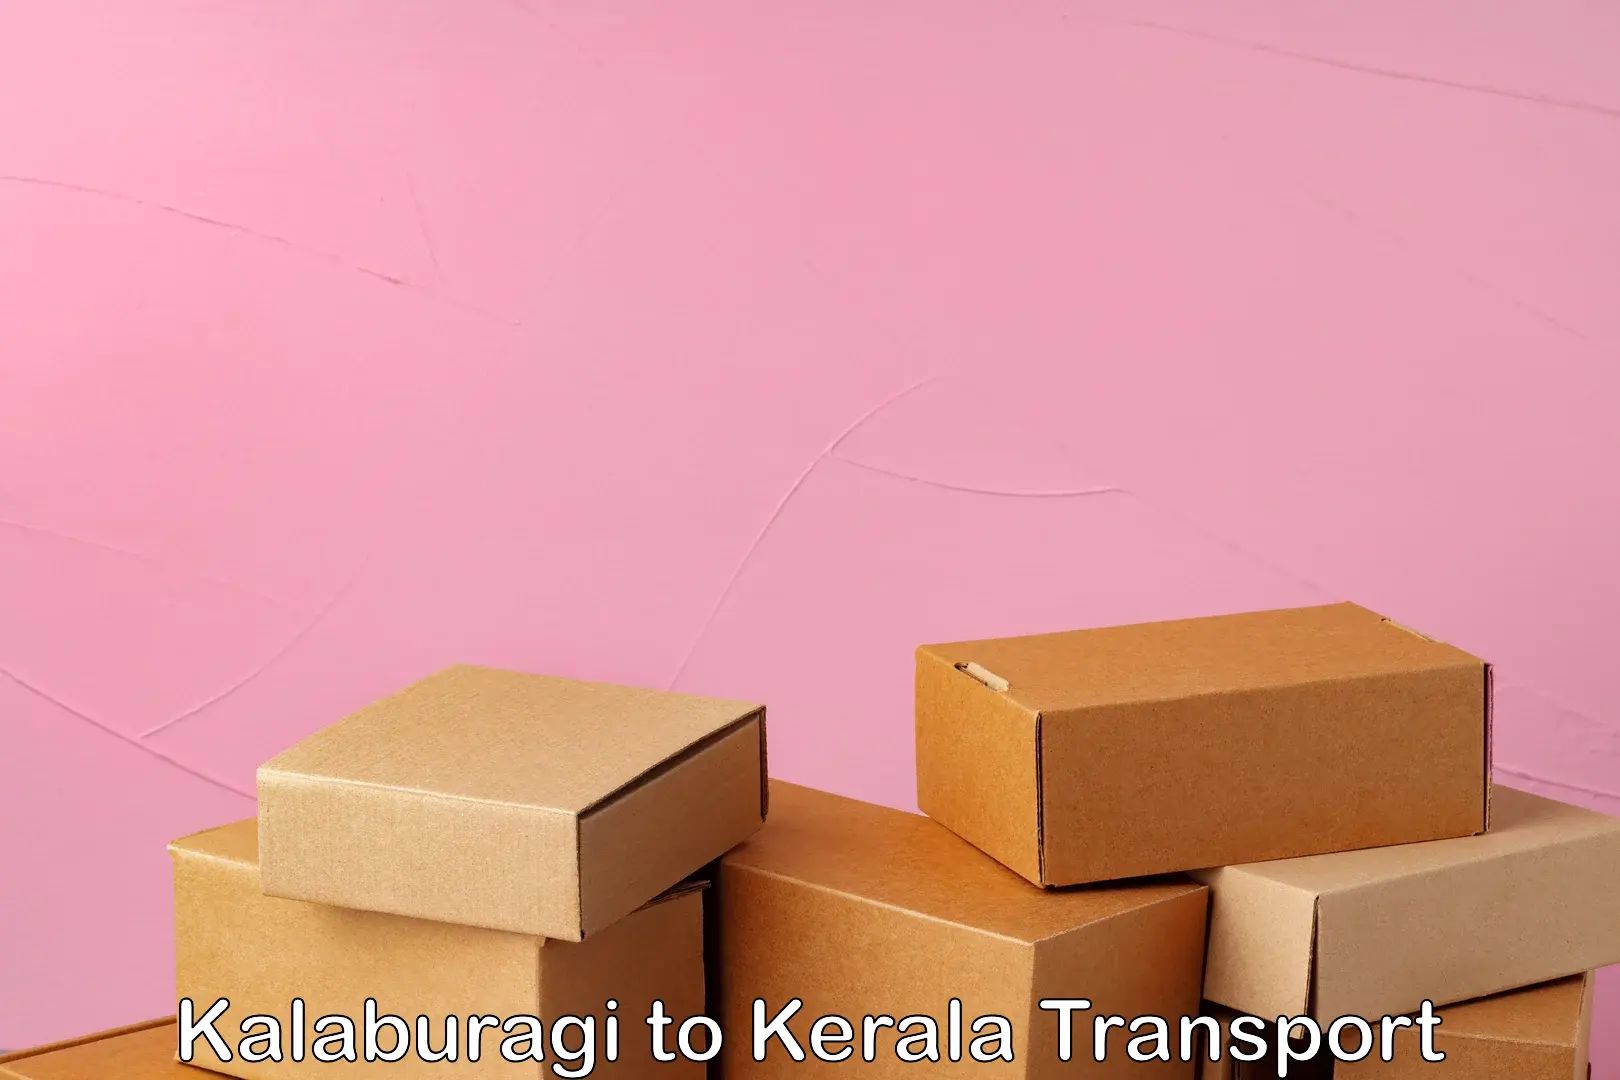 Interstate transport services Kalaburagi to Guruvayur